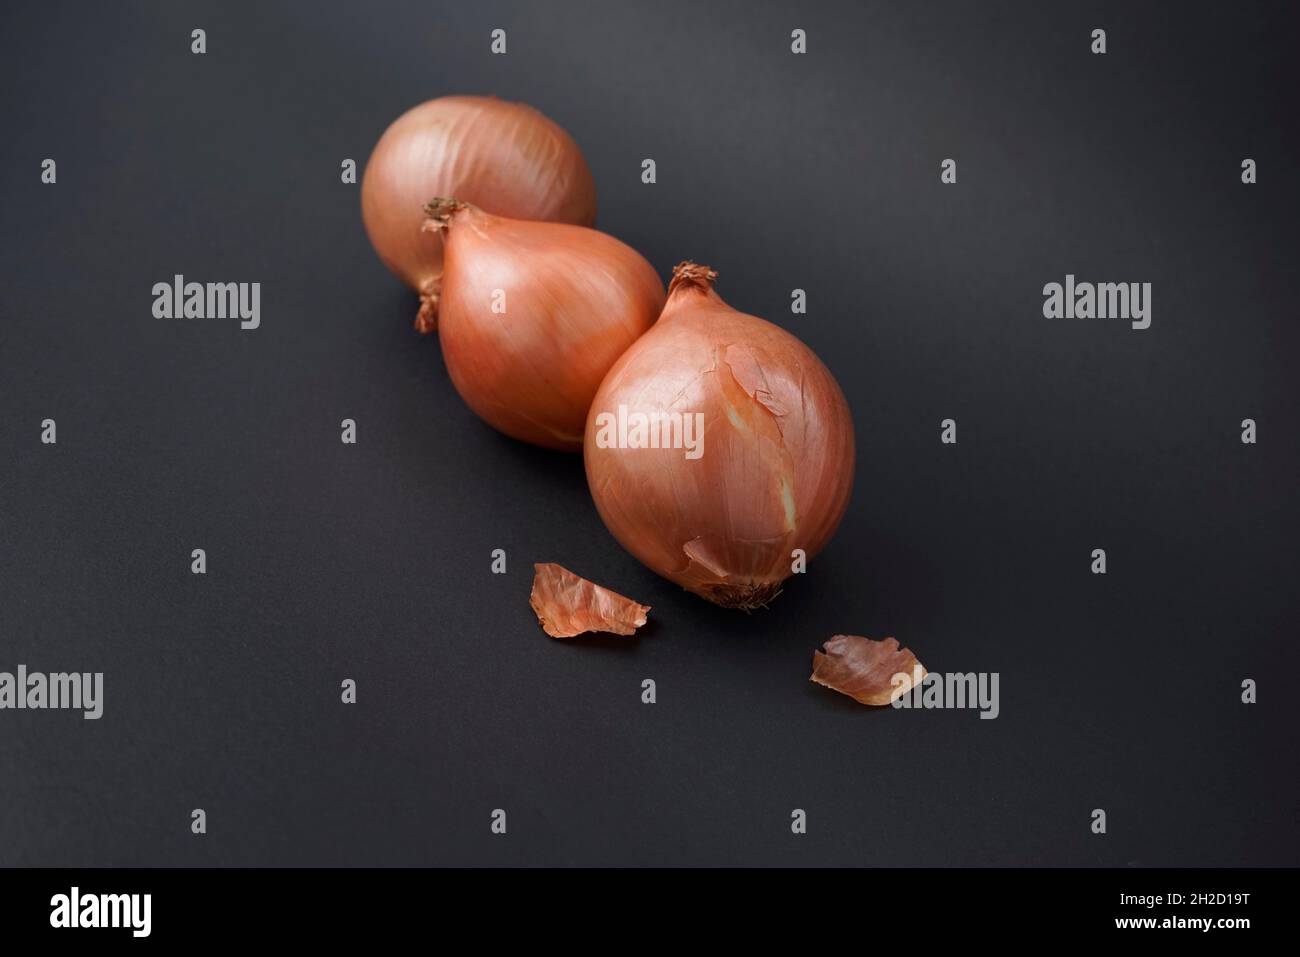 Zwiebel Zwiebel Zwiebel Wurzeln Food Styling gegen schwarze glänzende Textur abstrakten Hintergrund. Stockfoto